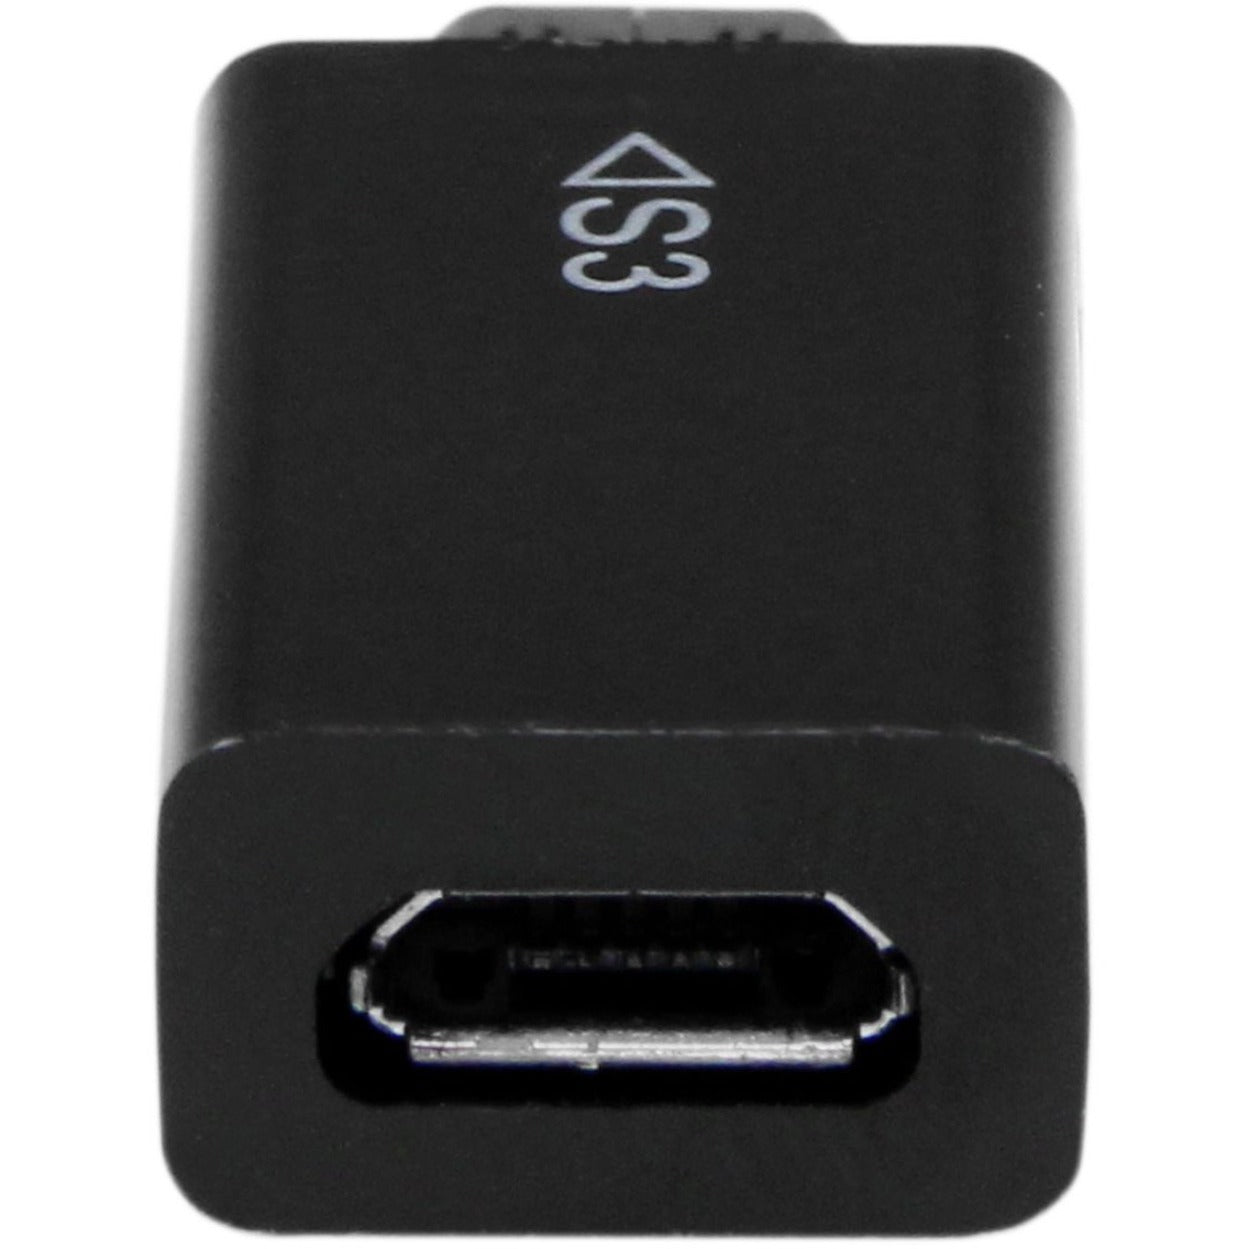 星特科技 S3MHADAP 微型 USB 5 引腳到 11 引腳 MHL 适配器 三星，Galaxy S3、S2、Note 2 的简易数据传输 品牌名称：星特科技.品牌名称翻译: StarTech.com